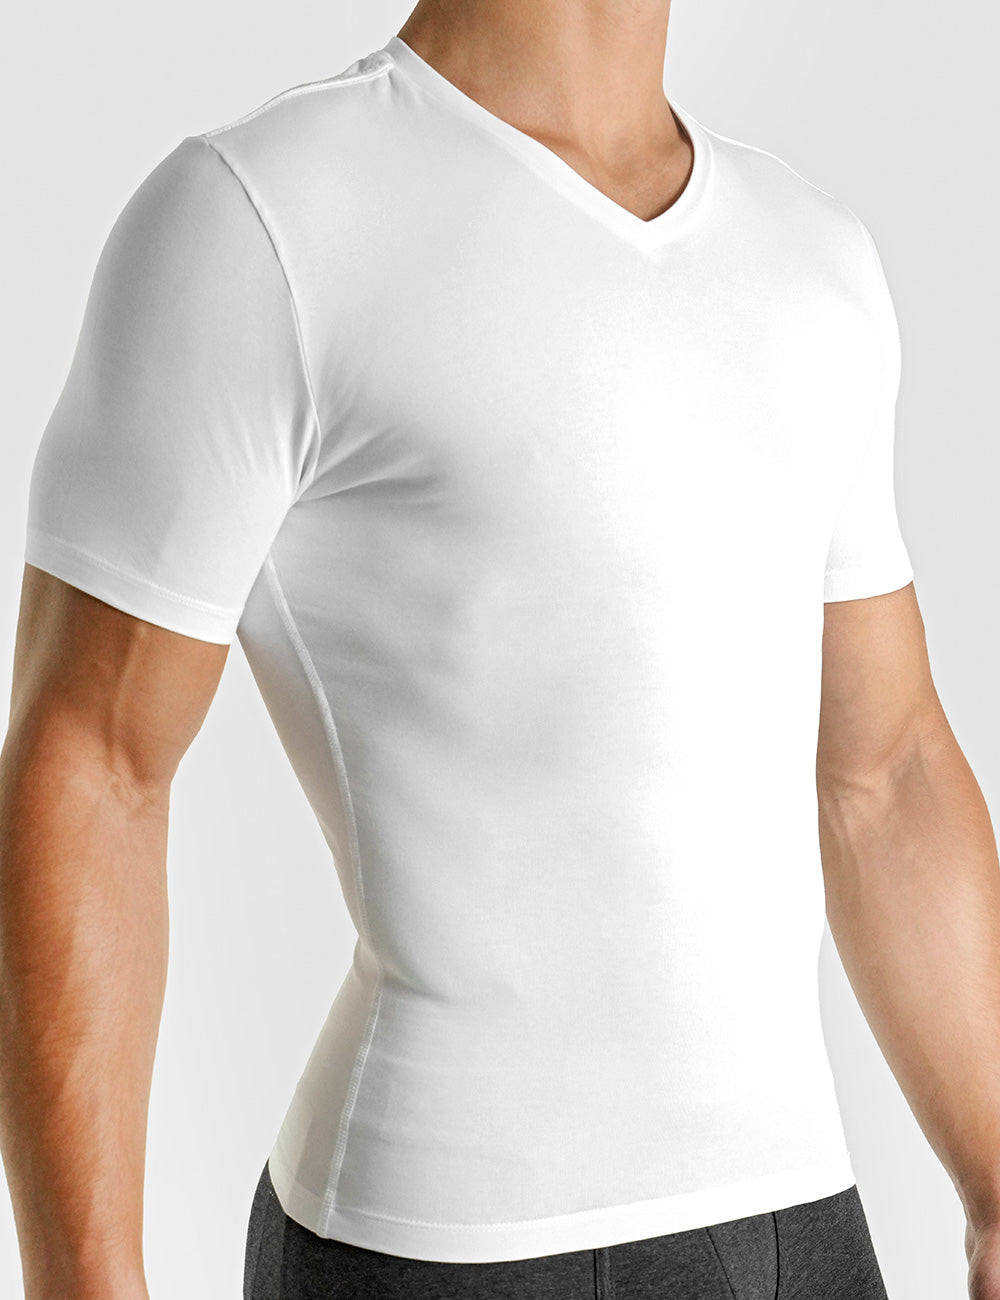 Cotton Compression T-Shirt